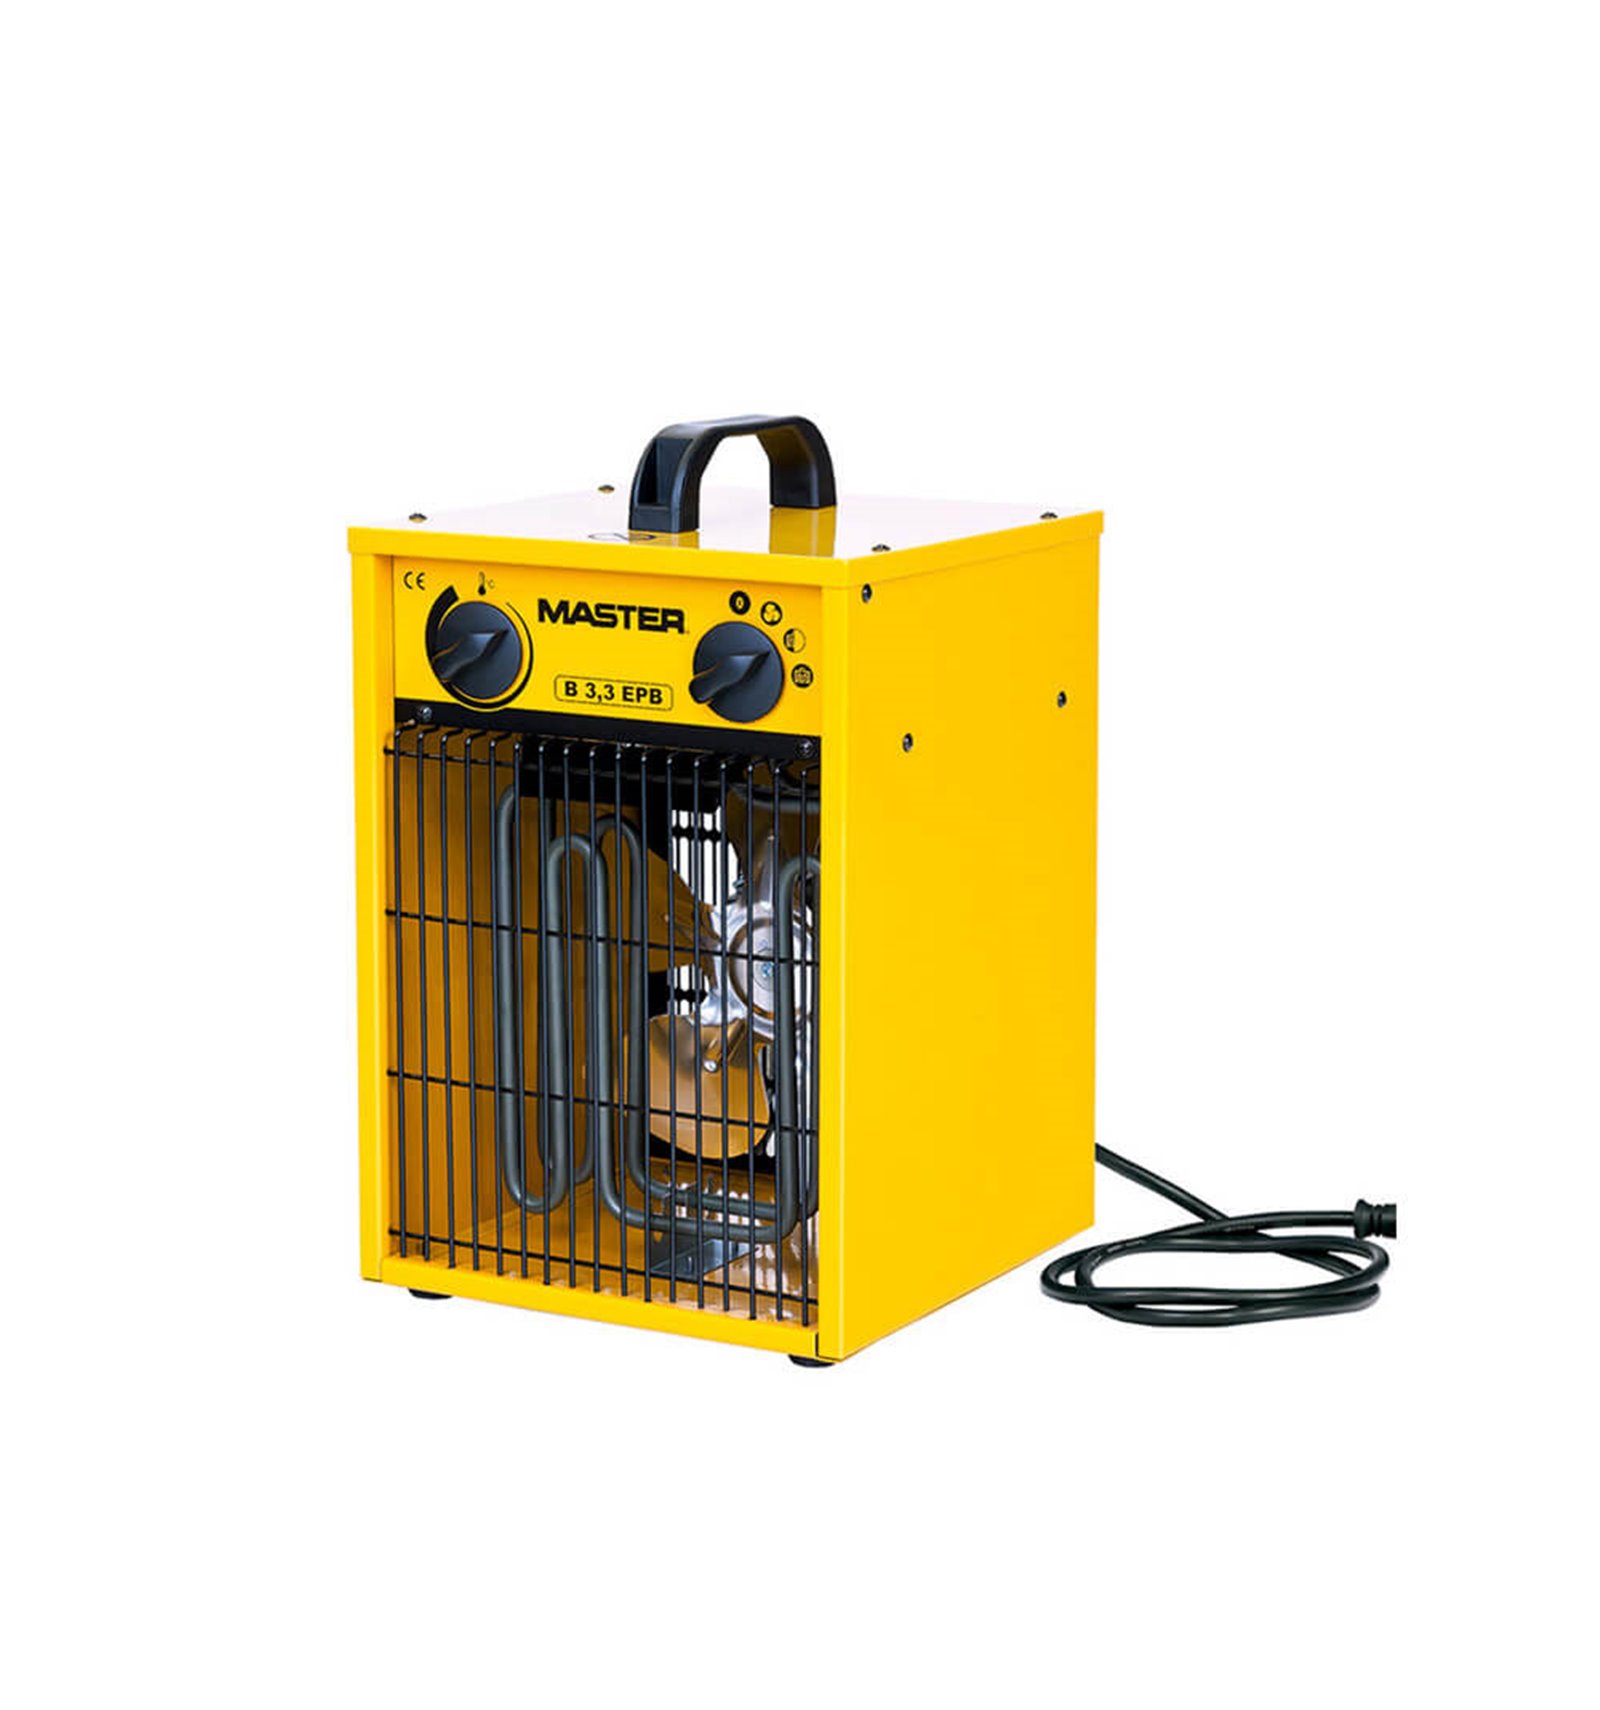 Turbo calefactor a gas Industrial J33, Generador de Aire Caliente